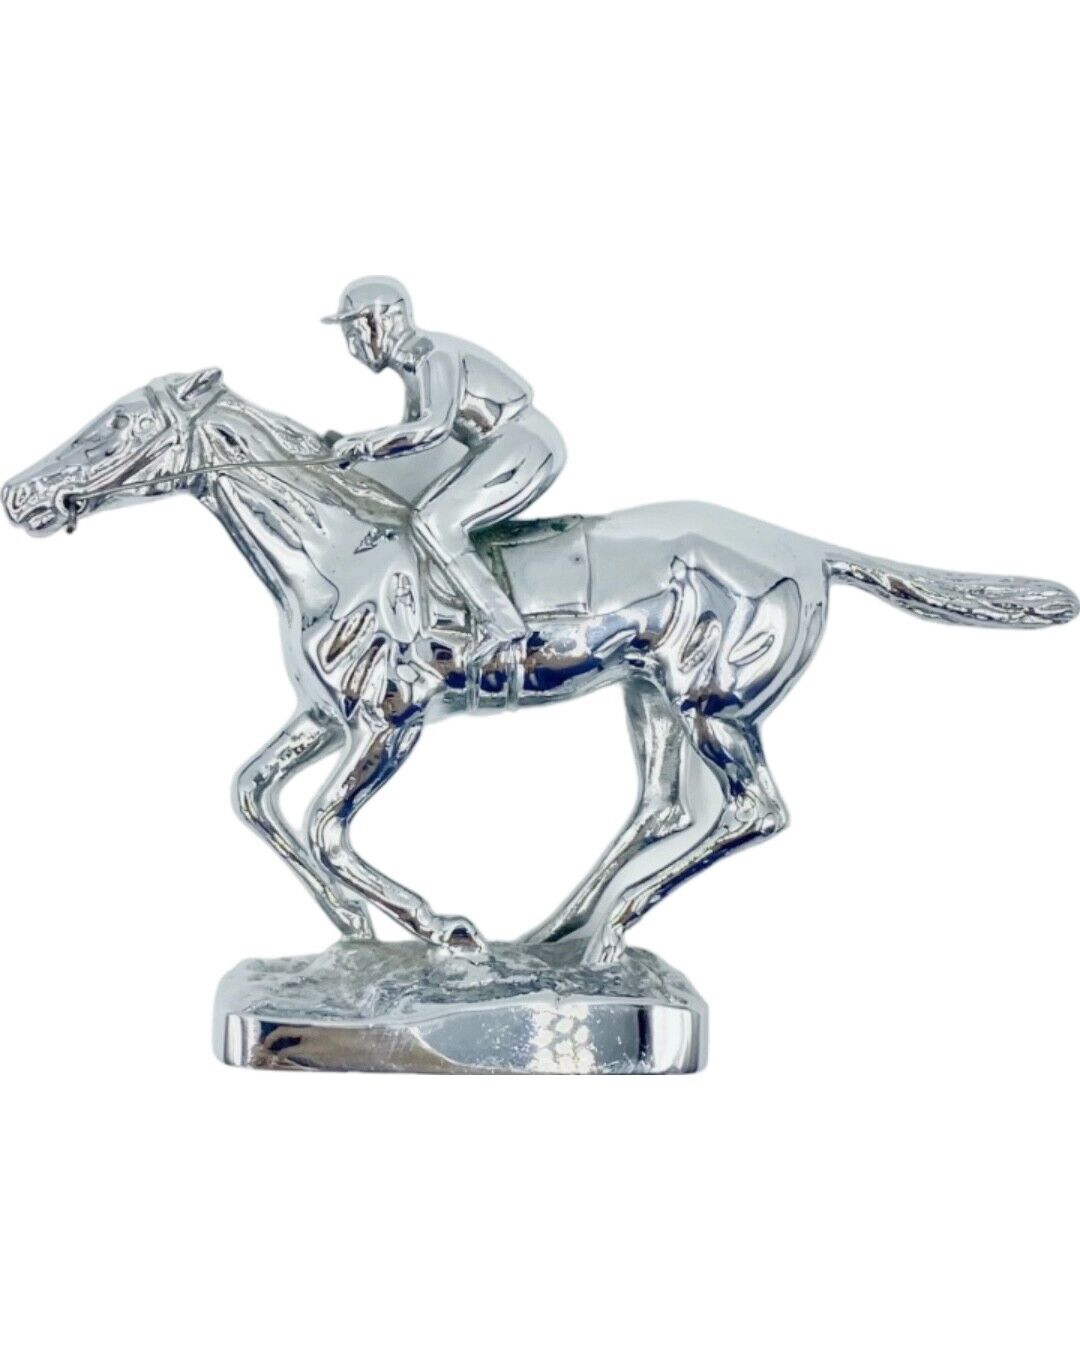 Vintage Louis Lejeune A Final Furlong Car Mascot Equestrian Horse Jockey